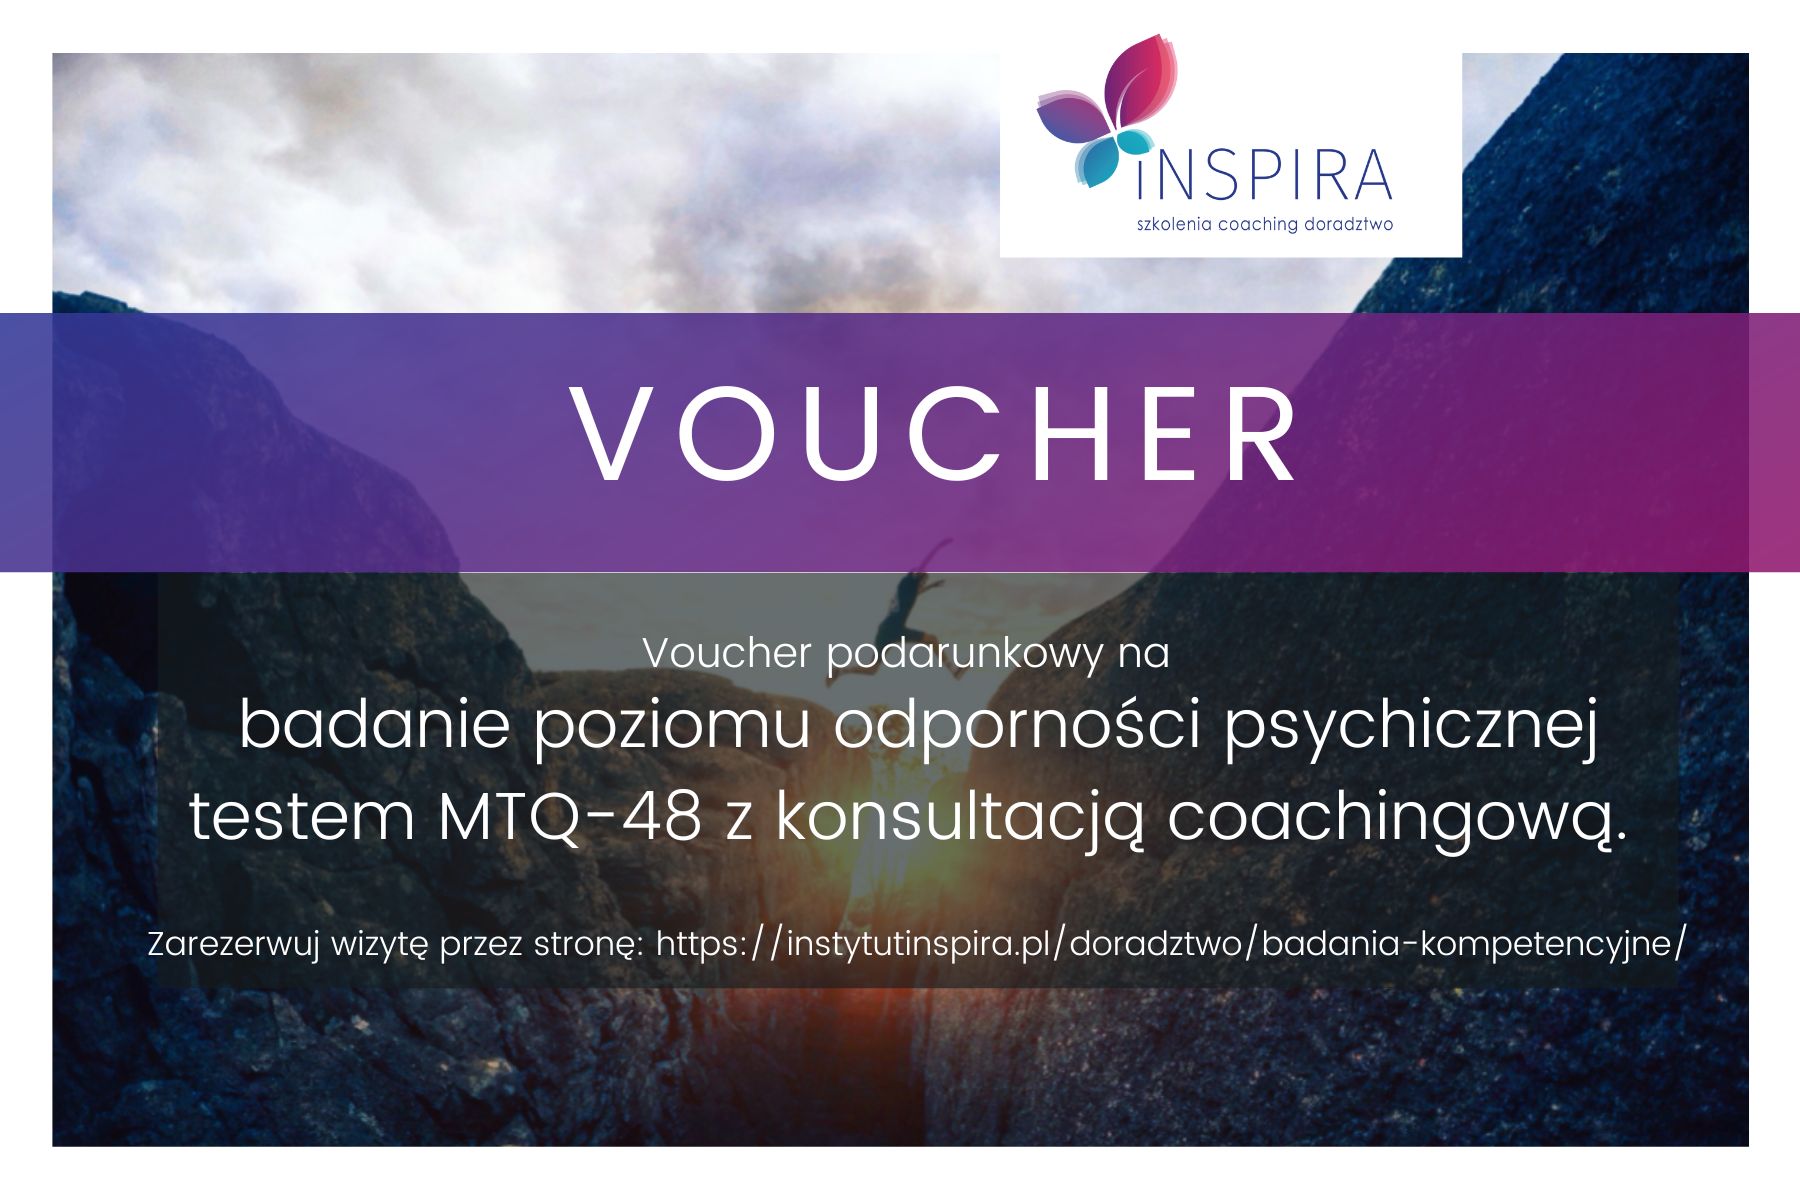 Voucher - badanie odporności psychicznej z konsultacją - Inspira